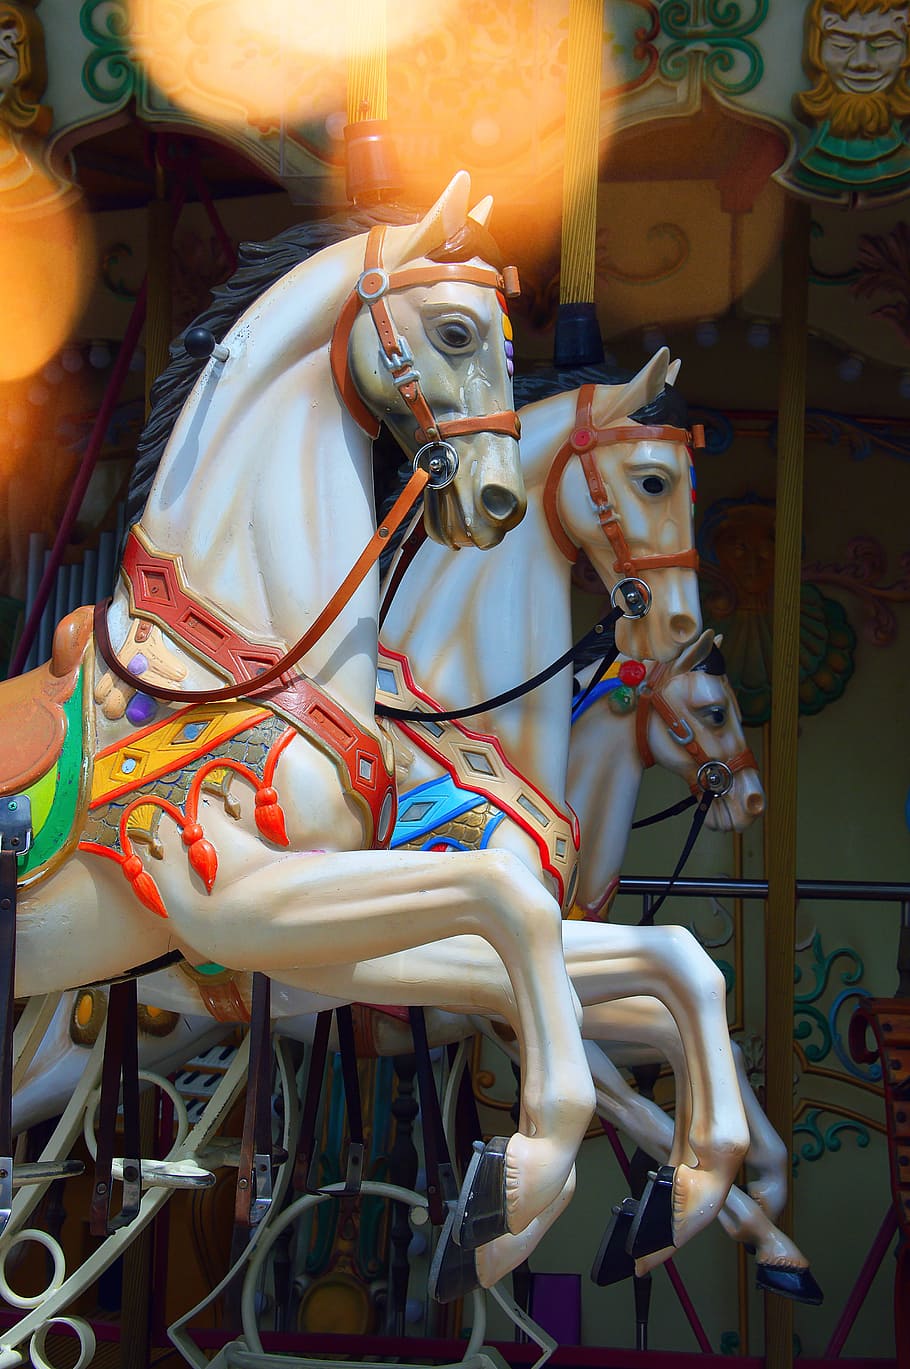 rocking horse, game, old, stylish, horses, plastic toy, carousel